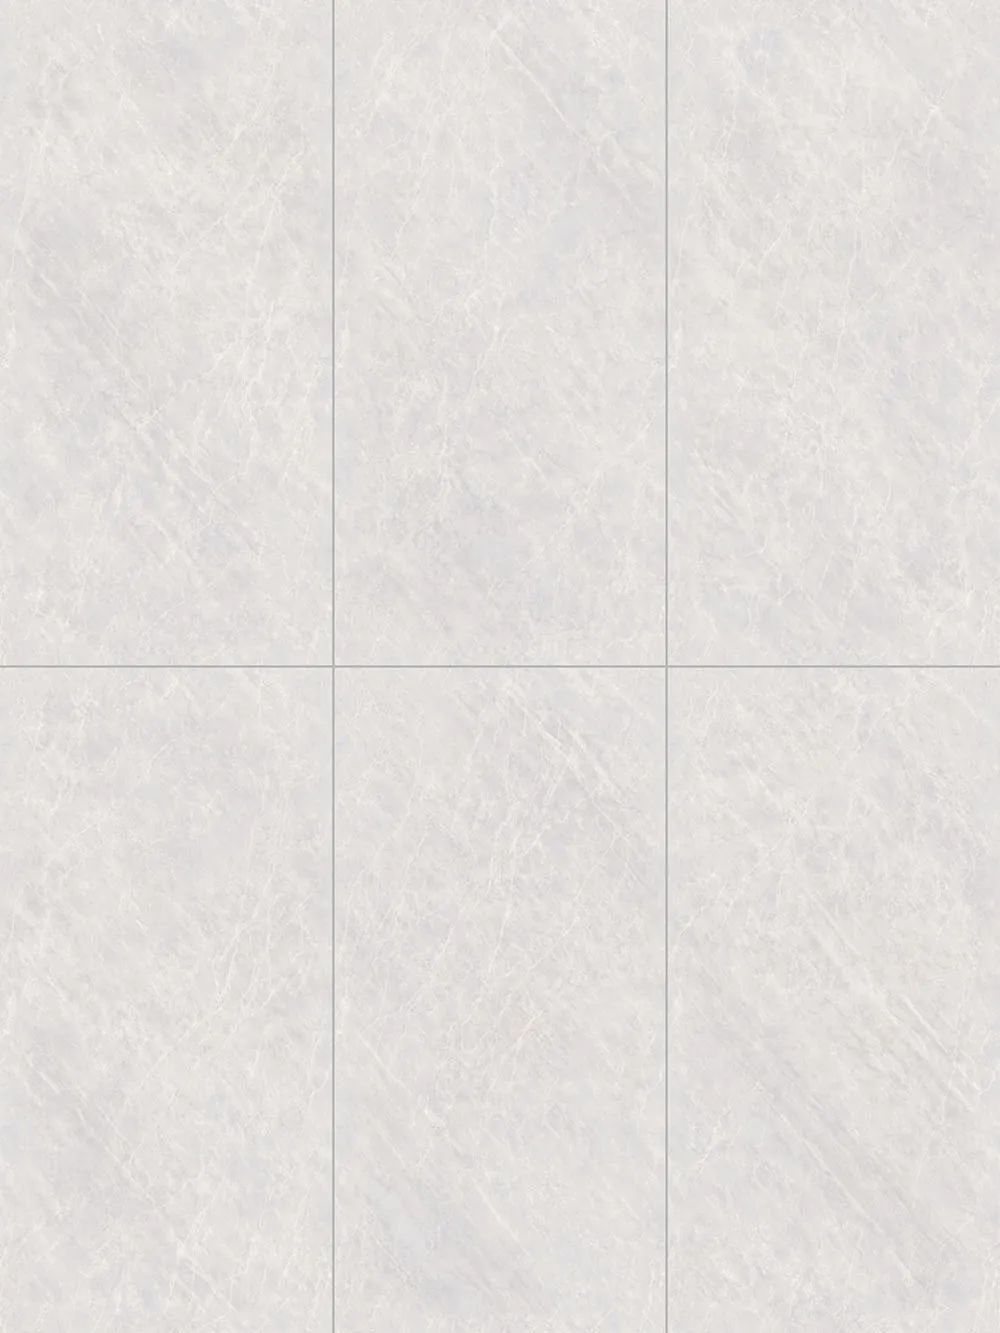 连纹大理石瓷砖美学丨浪漫写意的高雅空间(图19)